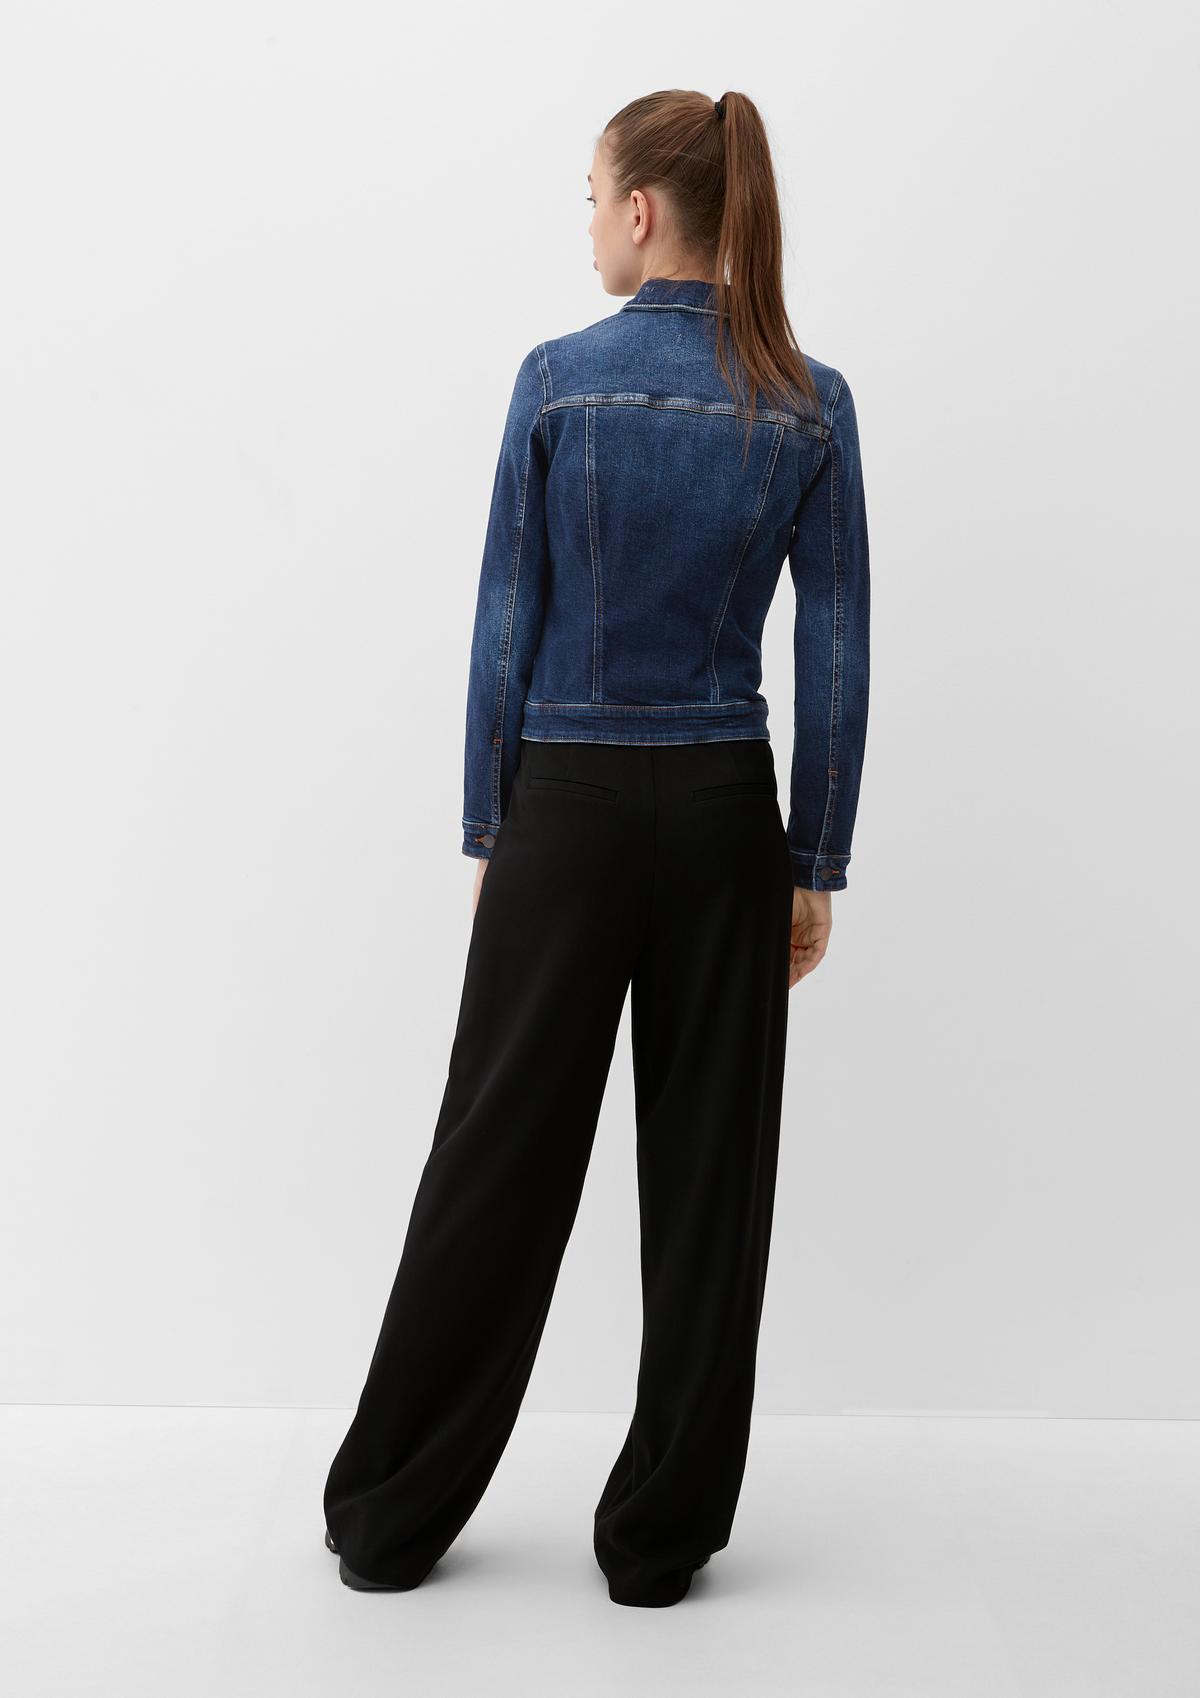 aus - Baumwollstretch blau Jeansjacke